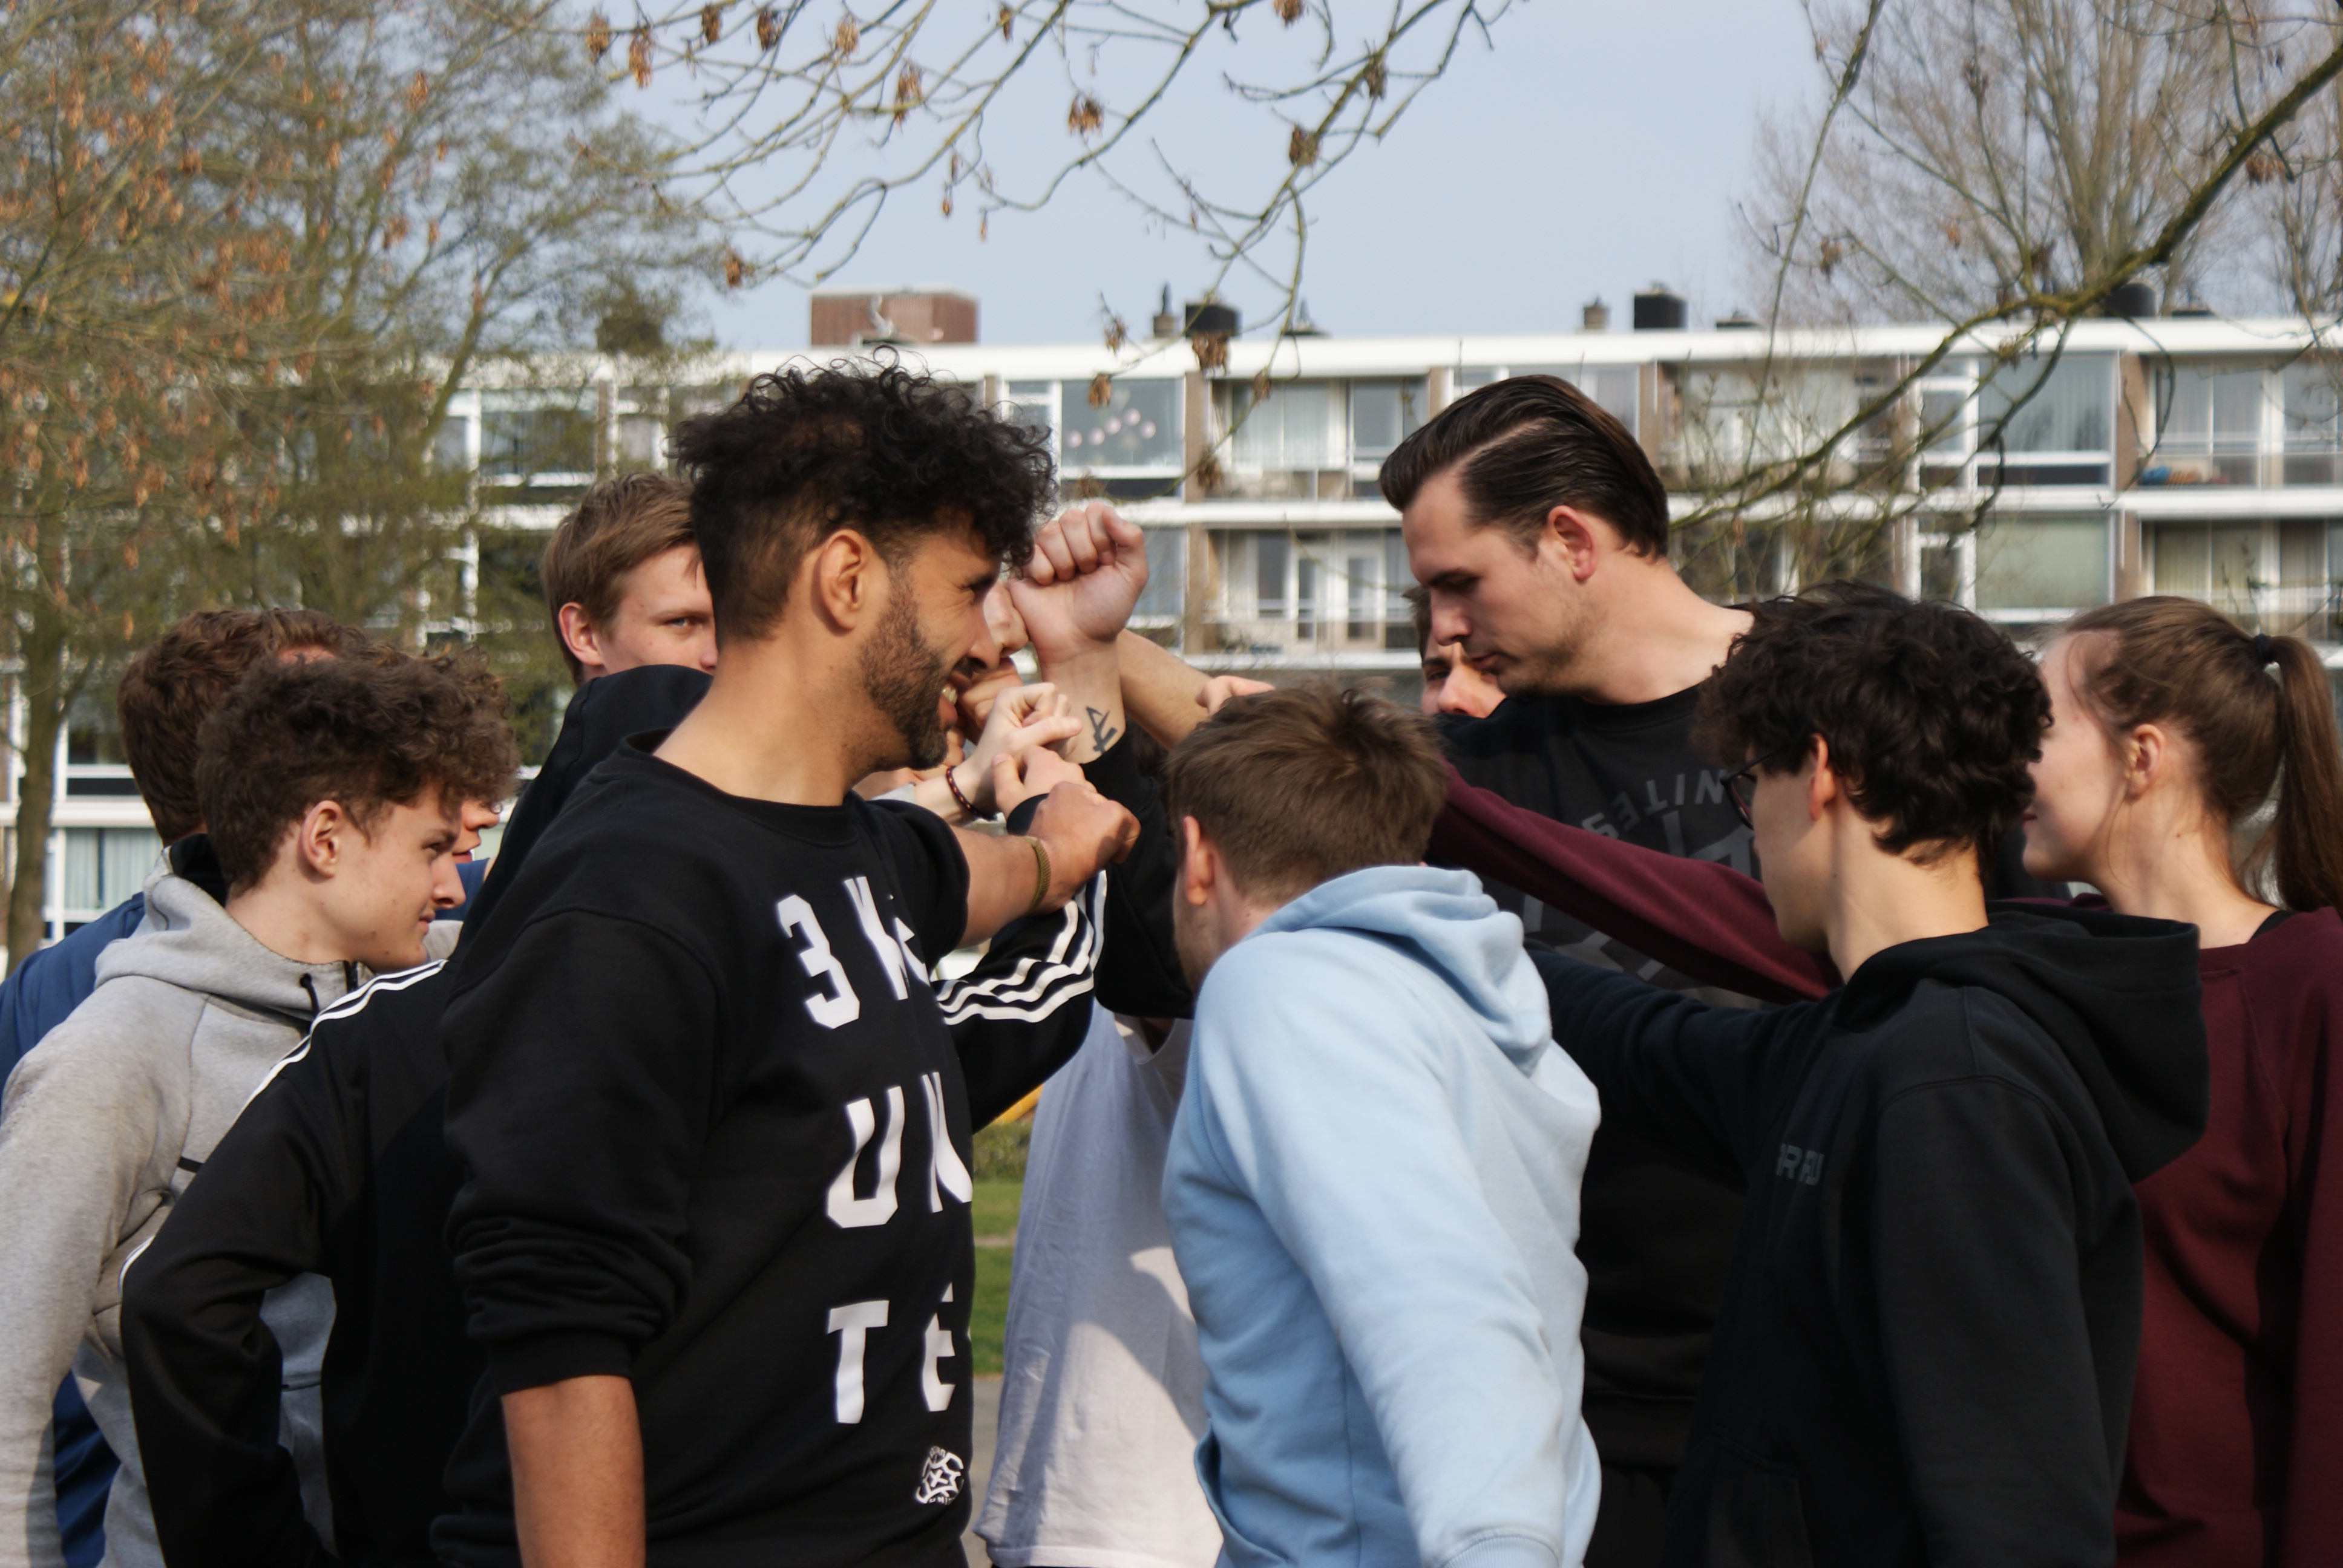 Laatste bijeenkomst van de 3X3 Leader Course in Amstelveen met 12 enthousiaste jongeren!